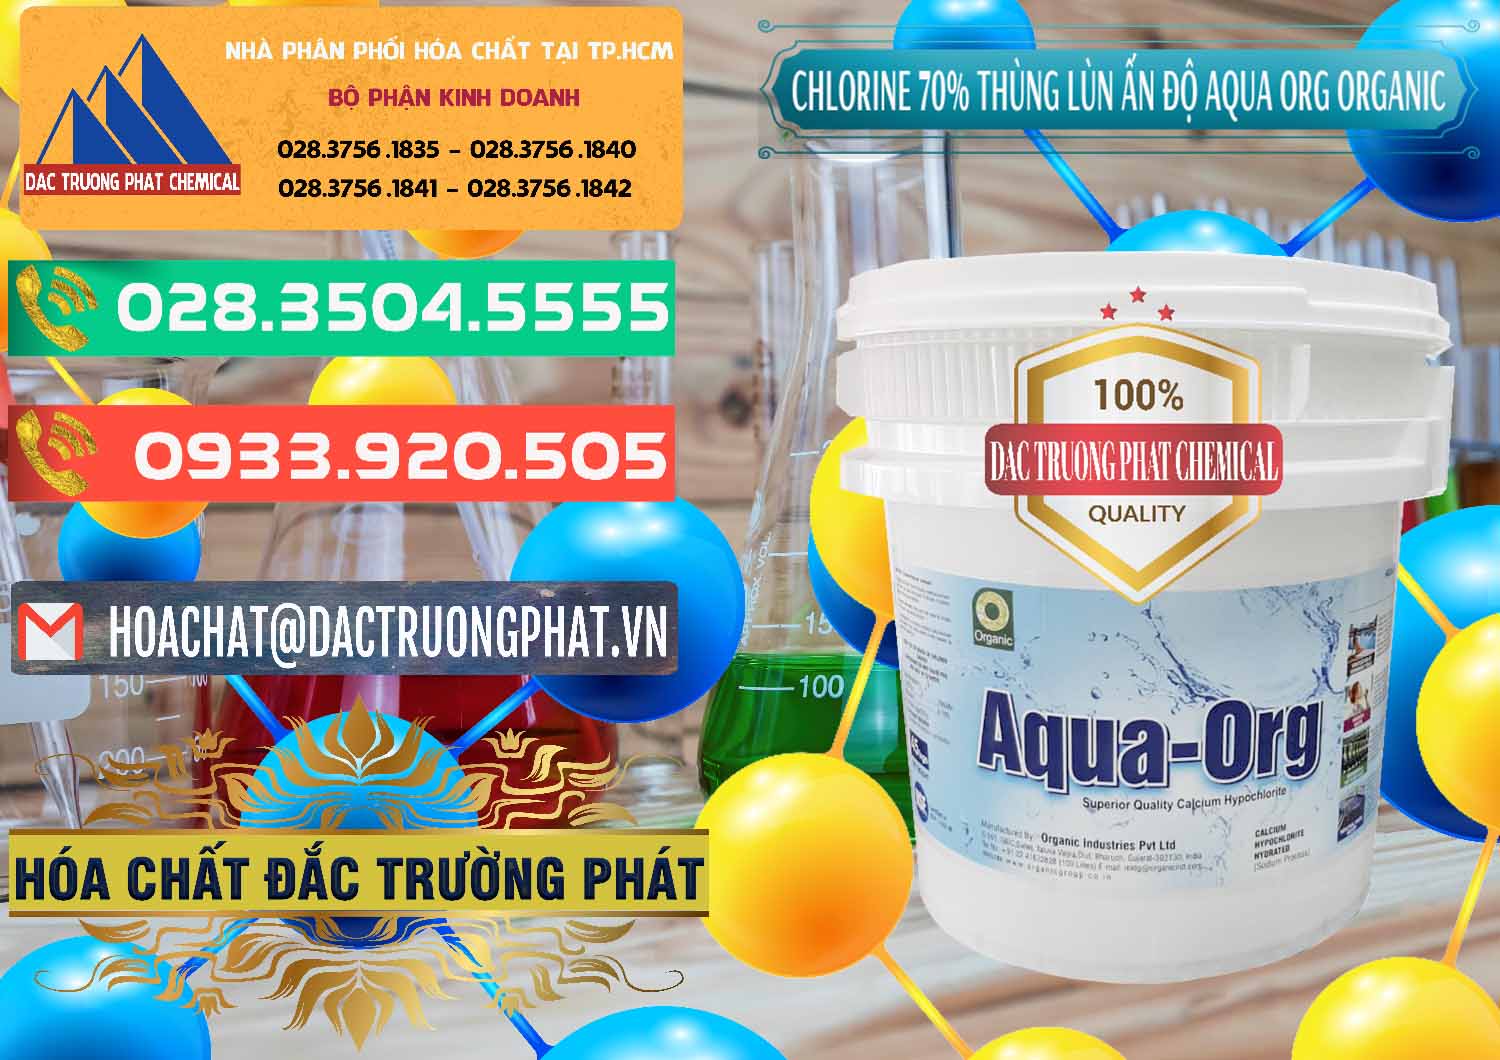 Nơi bán & phân phối Chlorine – Clorin 70% Thùng Lùn Ấn Độ Aqua ORG Organic India - 0212 - Chuyên kinh doanh ( phân phối ) hóa chất tại TP.HCM - congtyhoachat.com.vn